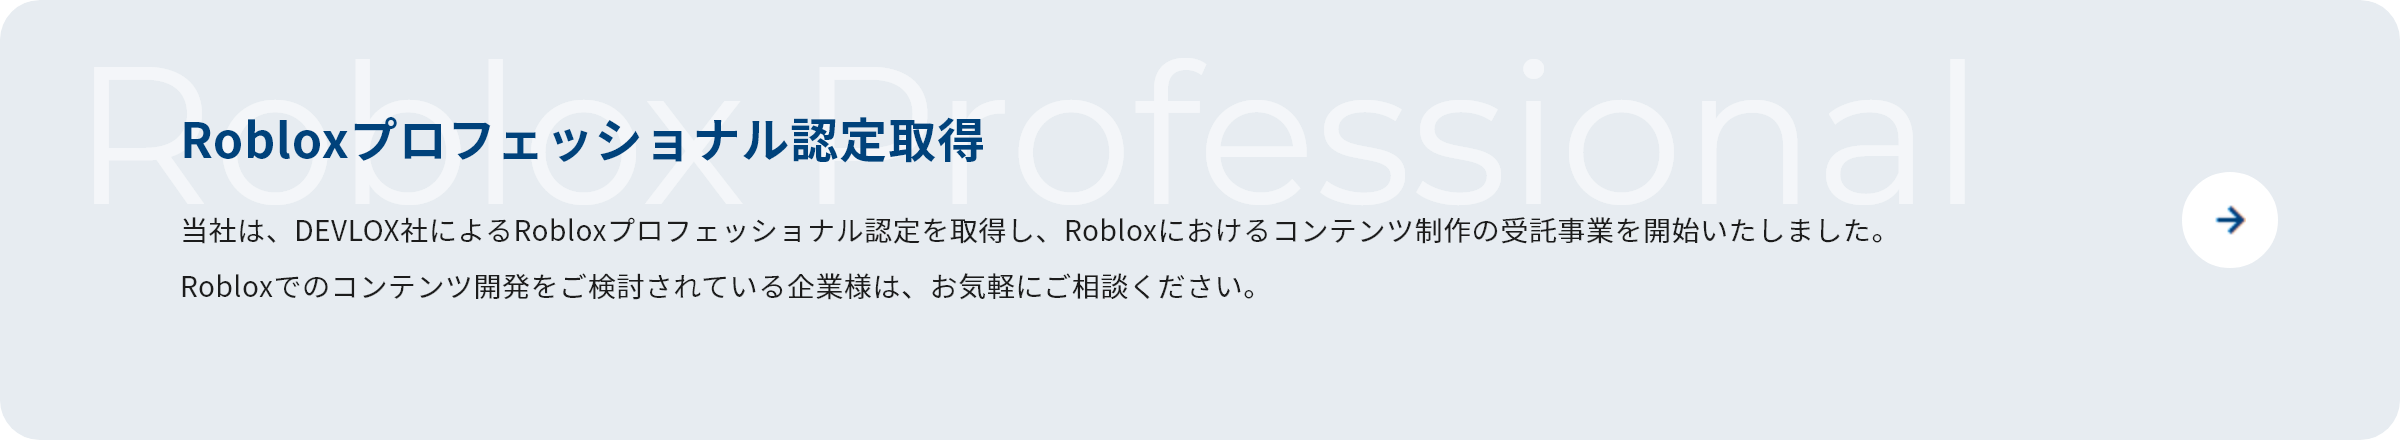 Robloxプロフェッショナル認定取得 当社は、DEVLOX社によるRobloxプロフェッショナル認定を取得し、Robloxにおけるコンテンツ制作の受託事業を開始いたしました。Robloxでのコンテンツ開発をご検討されている企業様は、お気軽にご相談ください。